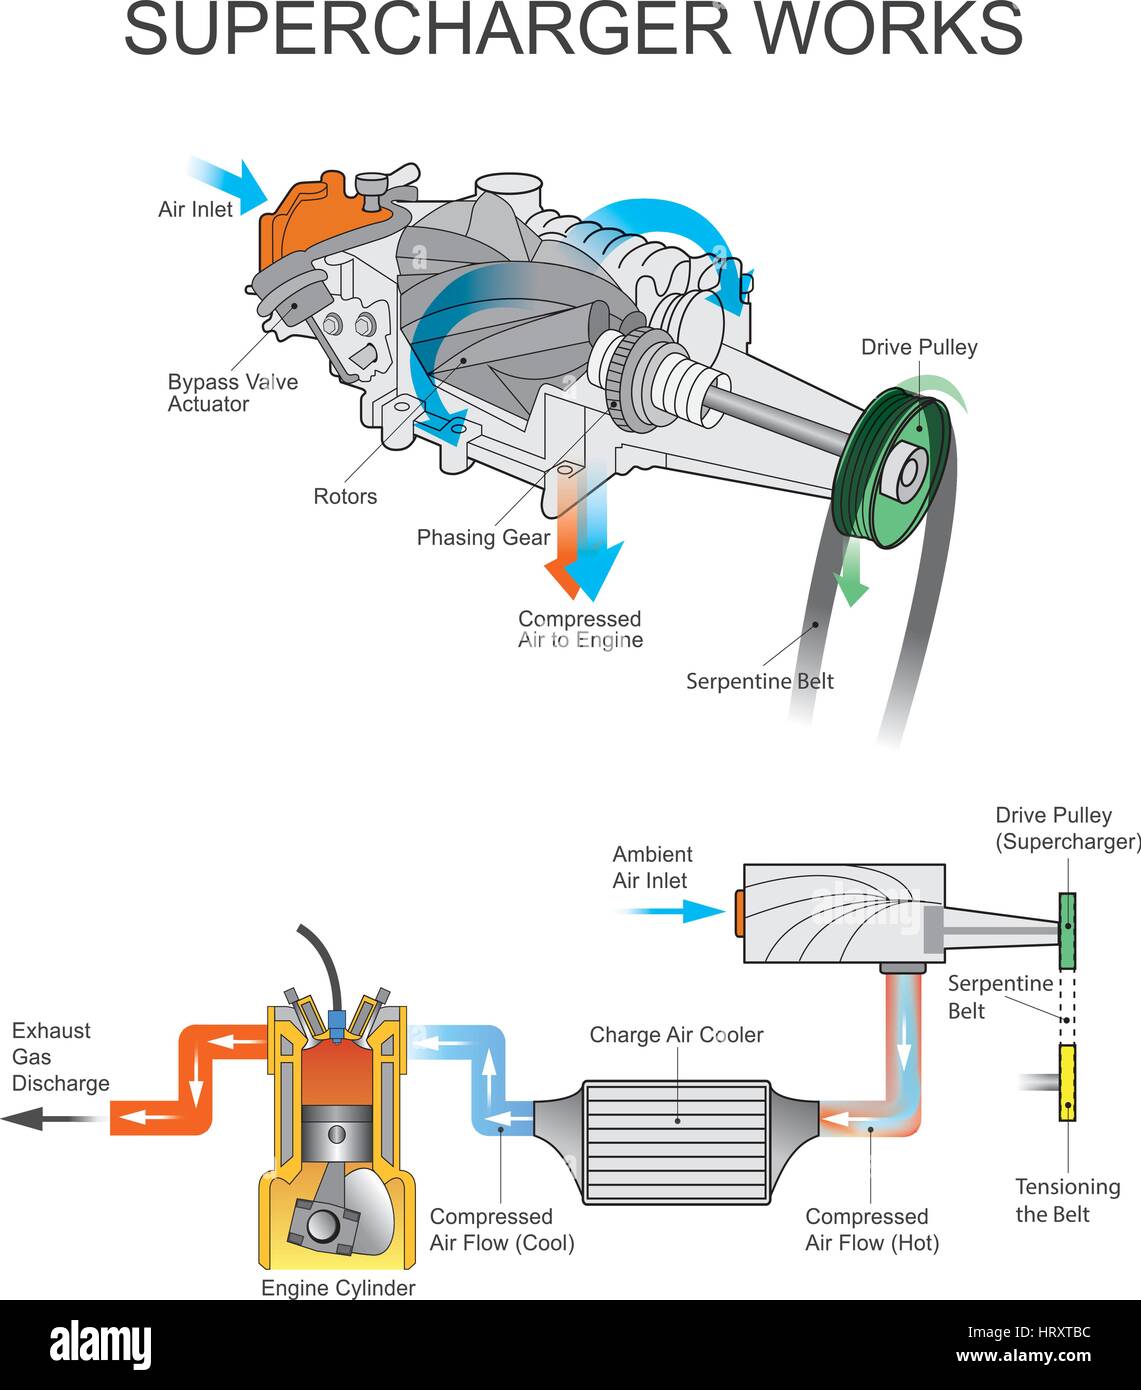 Un compresseur est un compresseur d'air qui augmente la pression ou la densité de l'air fourni à un moteur à combustion interne. Cela donne à chaque cy d'admission Illustration de Vecteur